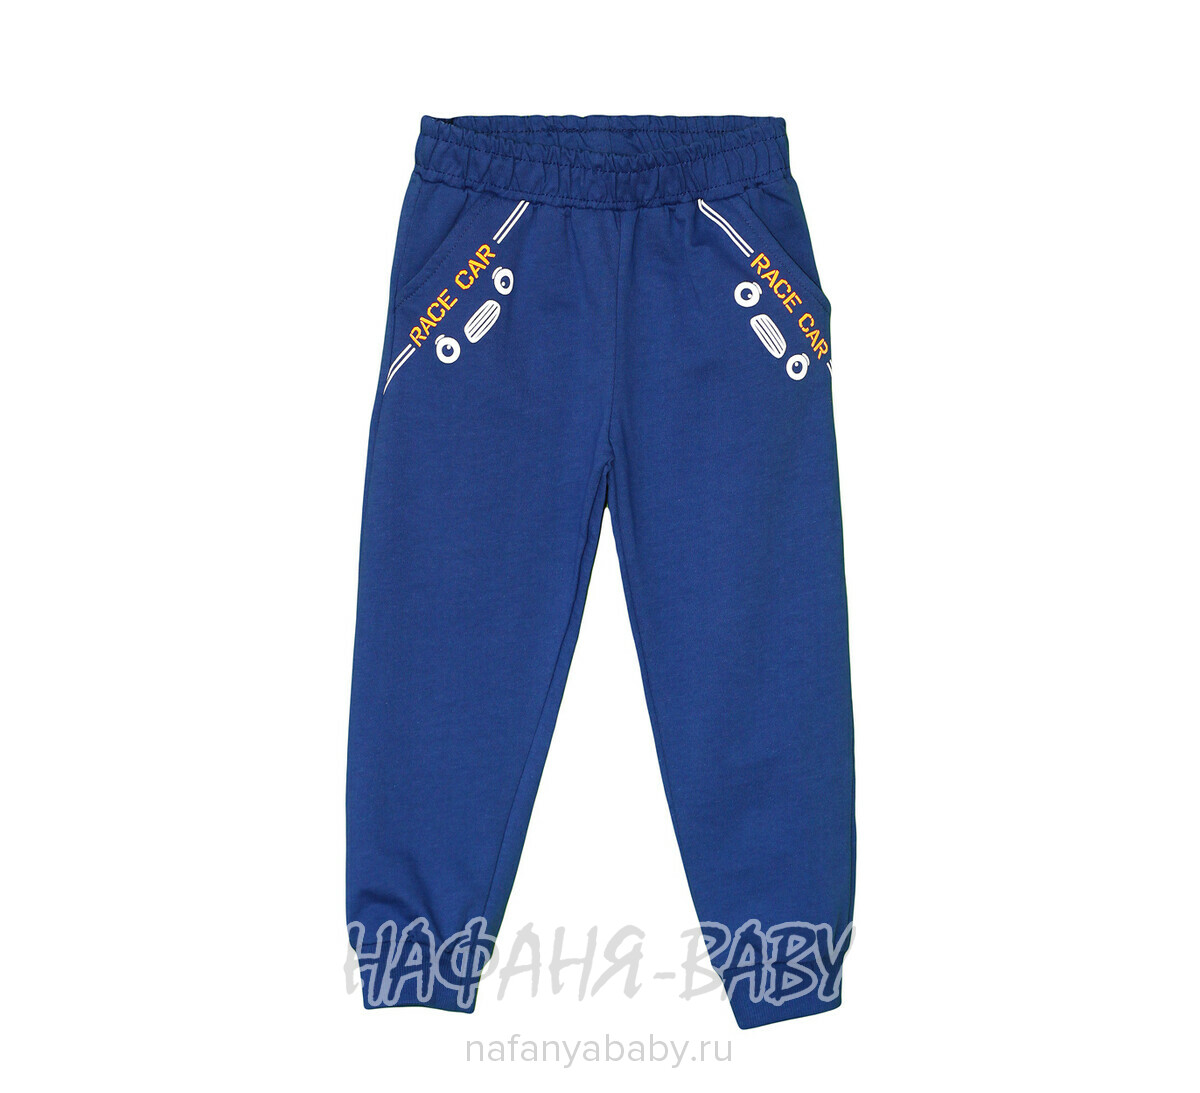 Детские трикотажные брюки Bobito арт: 2101, 1-4 года, цвет сине-серый, оптом Турция